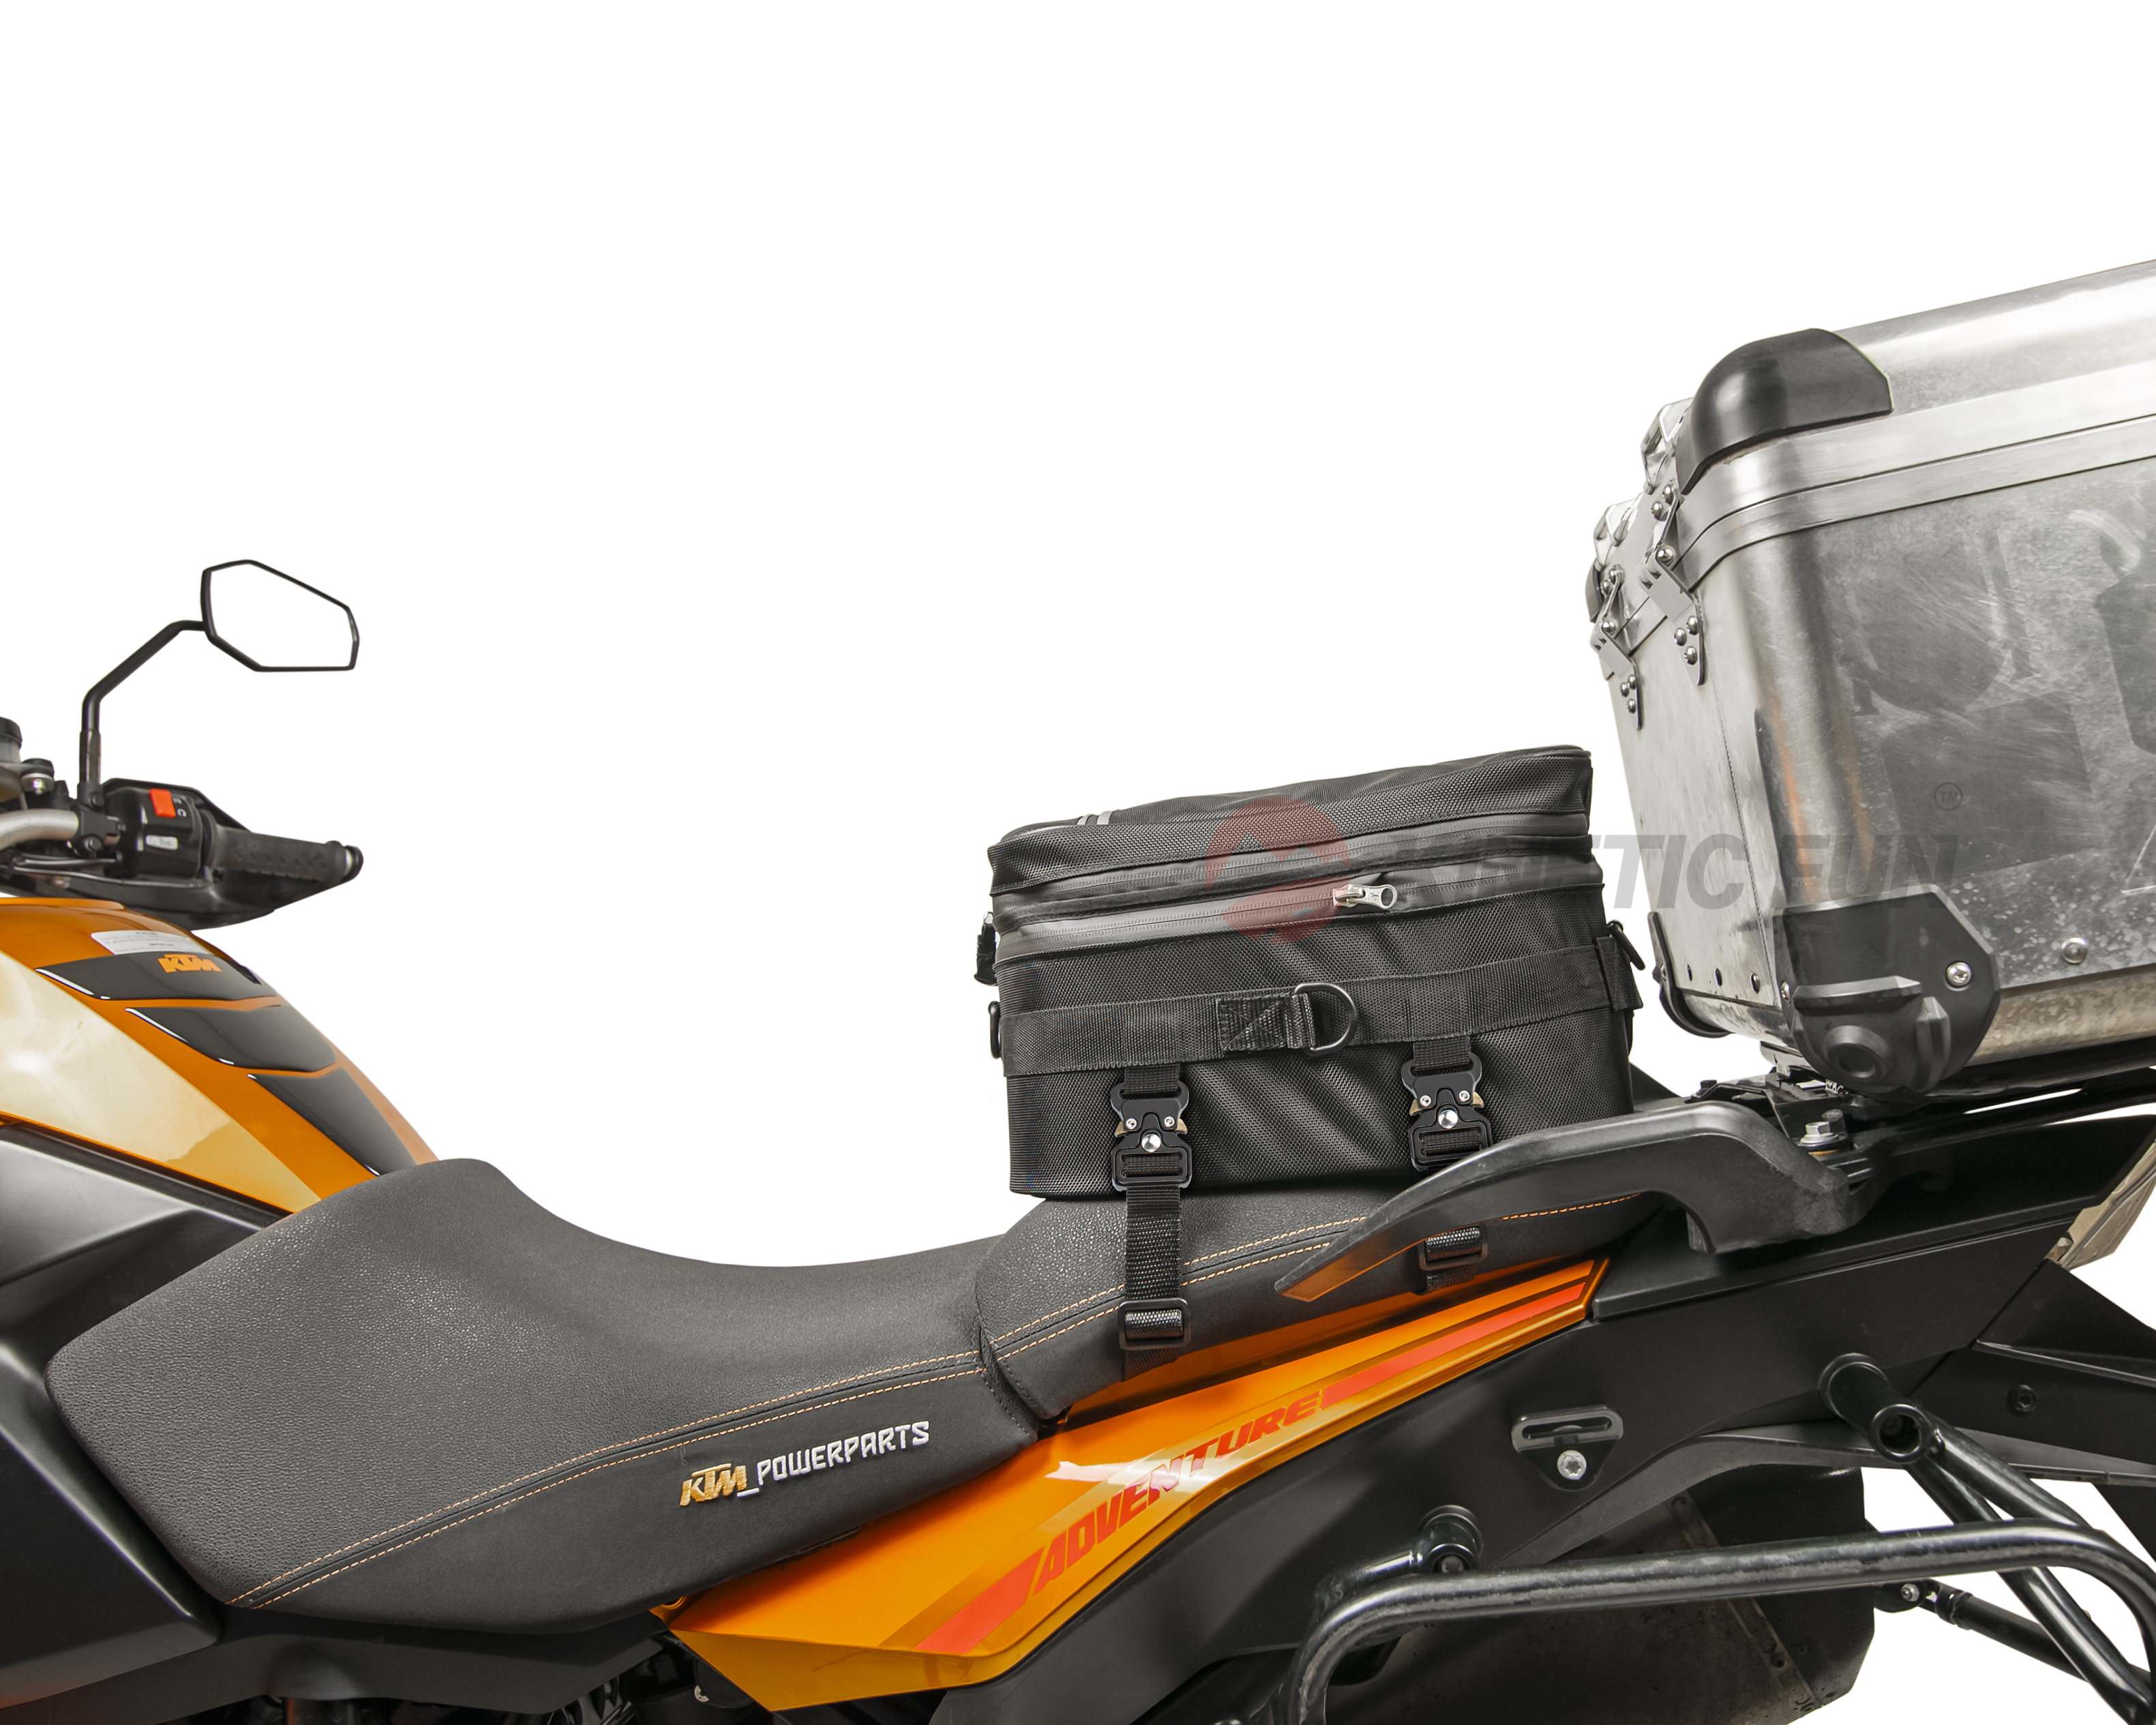 Сумка для мотоцикла Harley Davidson FAT BOY (107 CUI) - седельная Touring, объём 12-20 литров